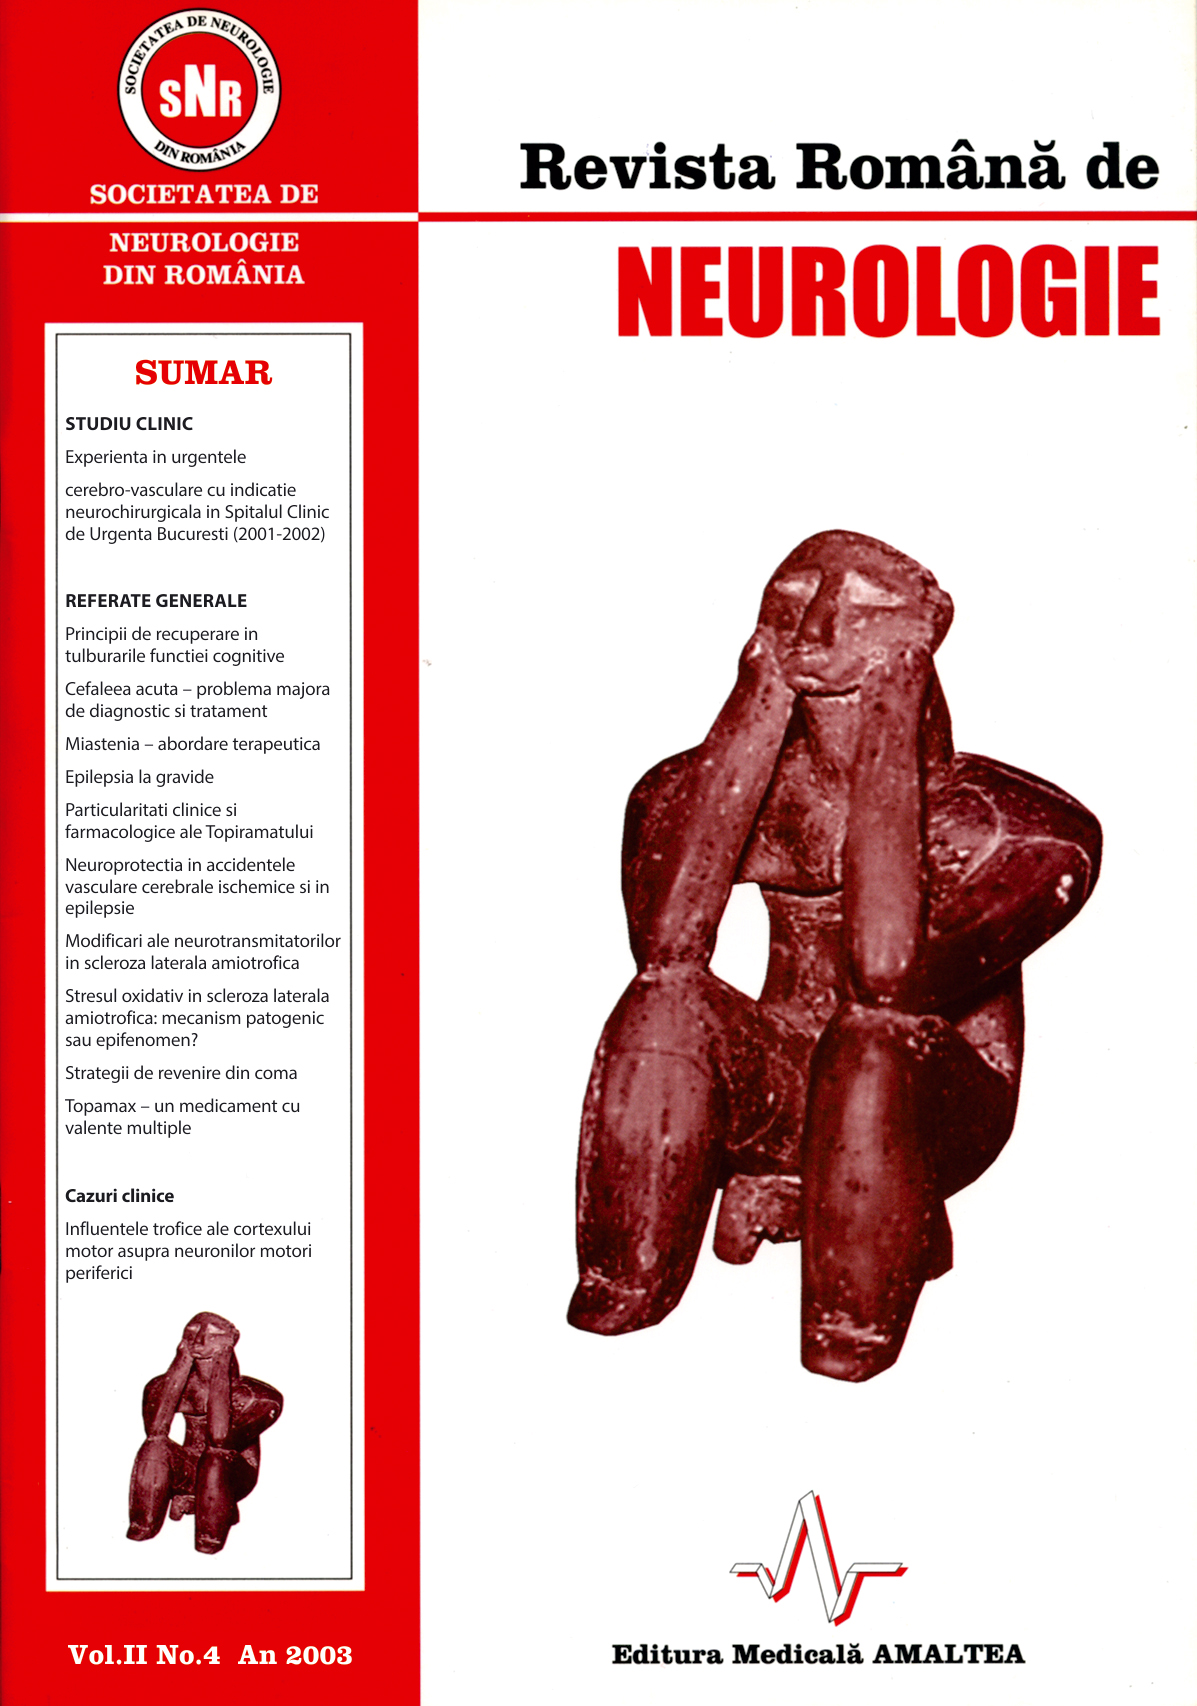 Romanian Journal of Neurology, Volume II, No. 4, 2003